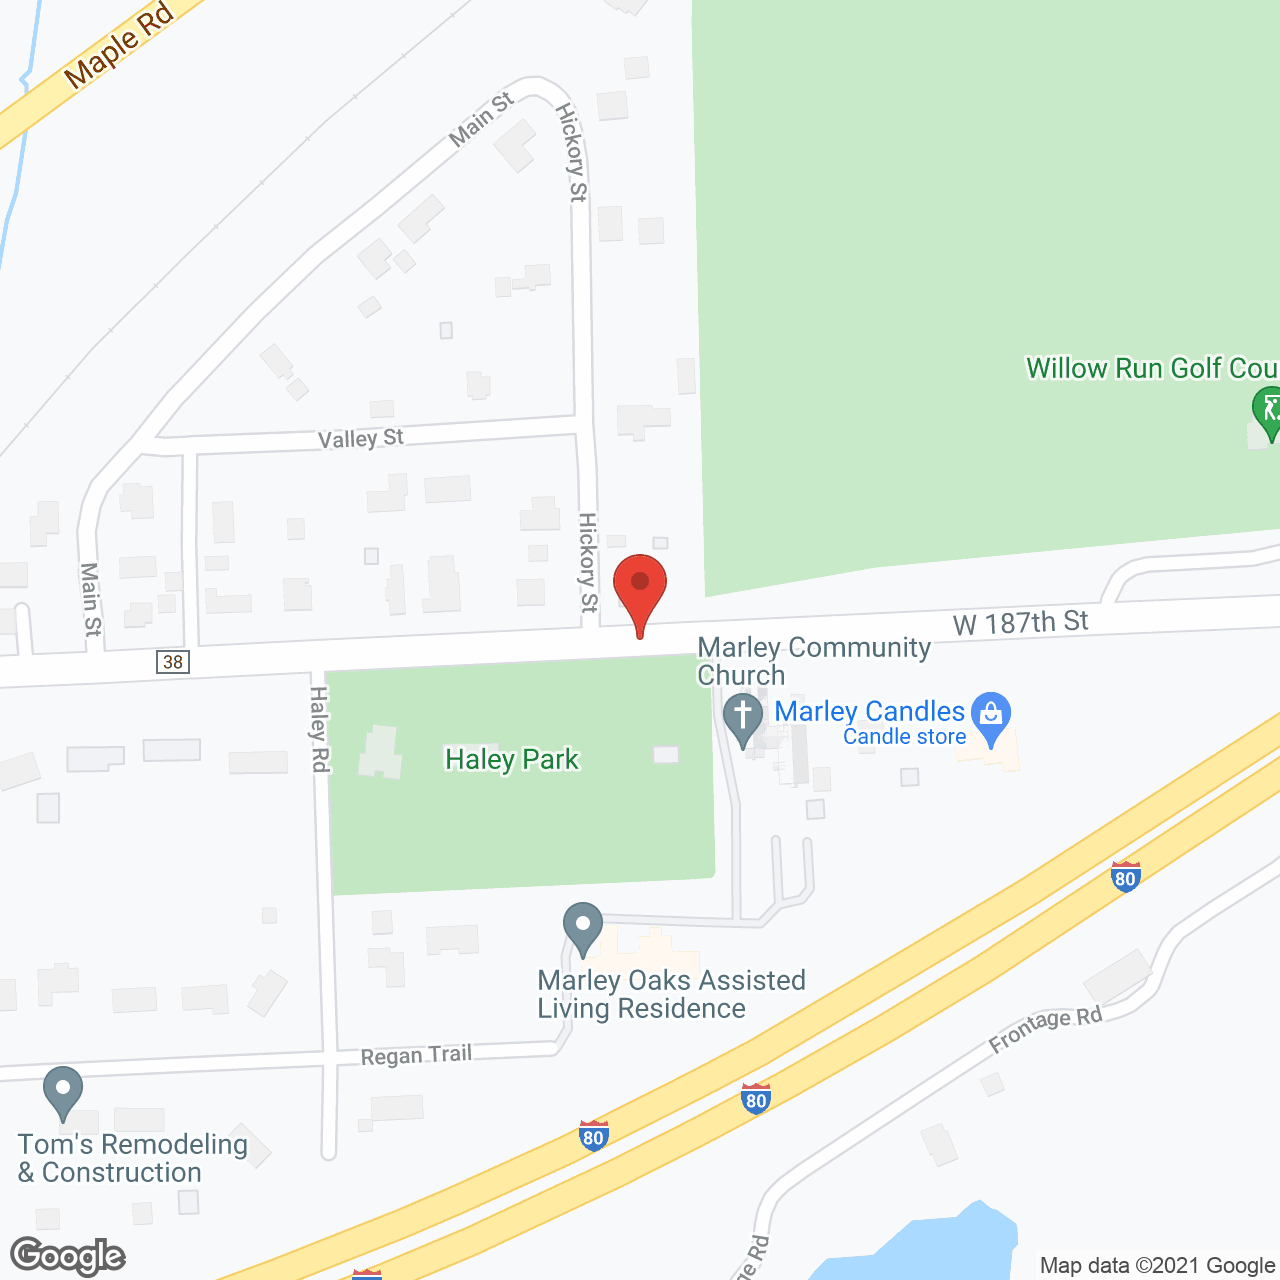 Marley Oaks in google map